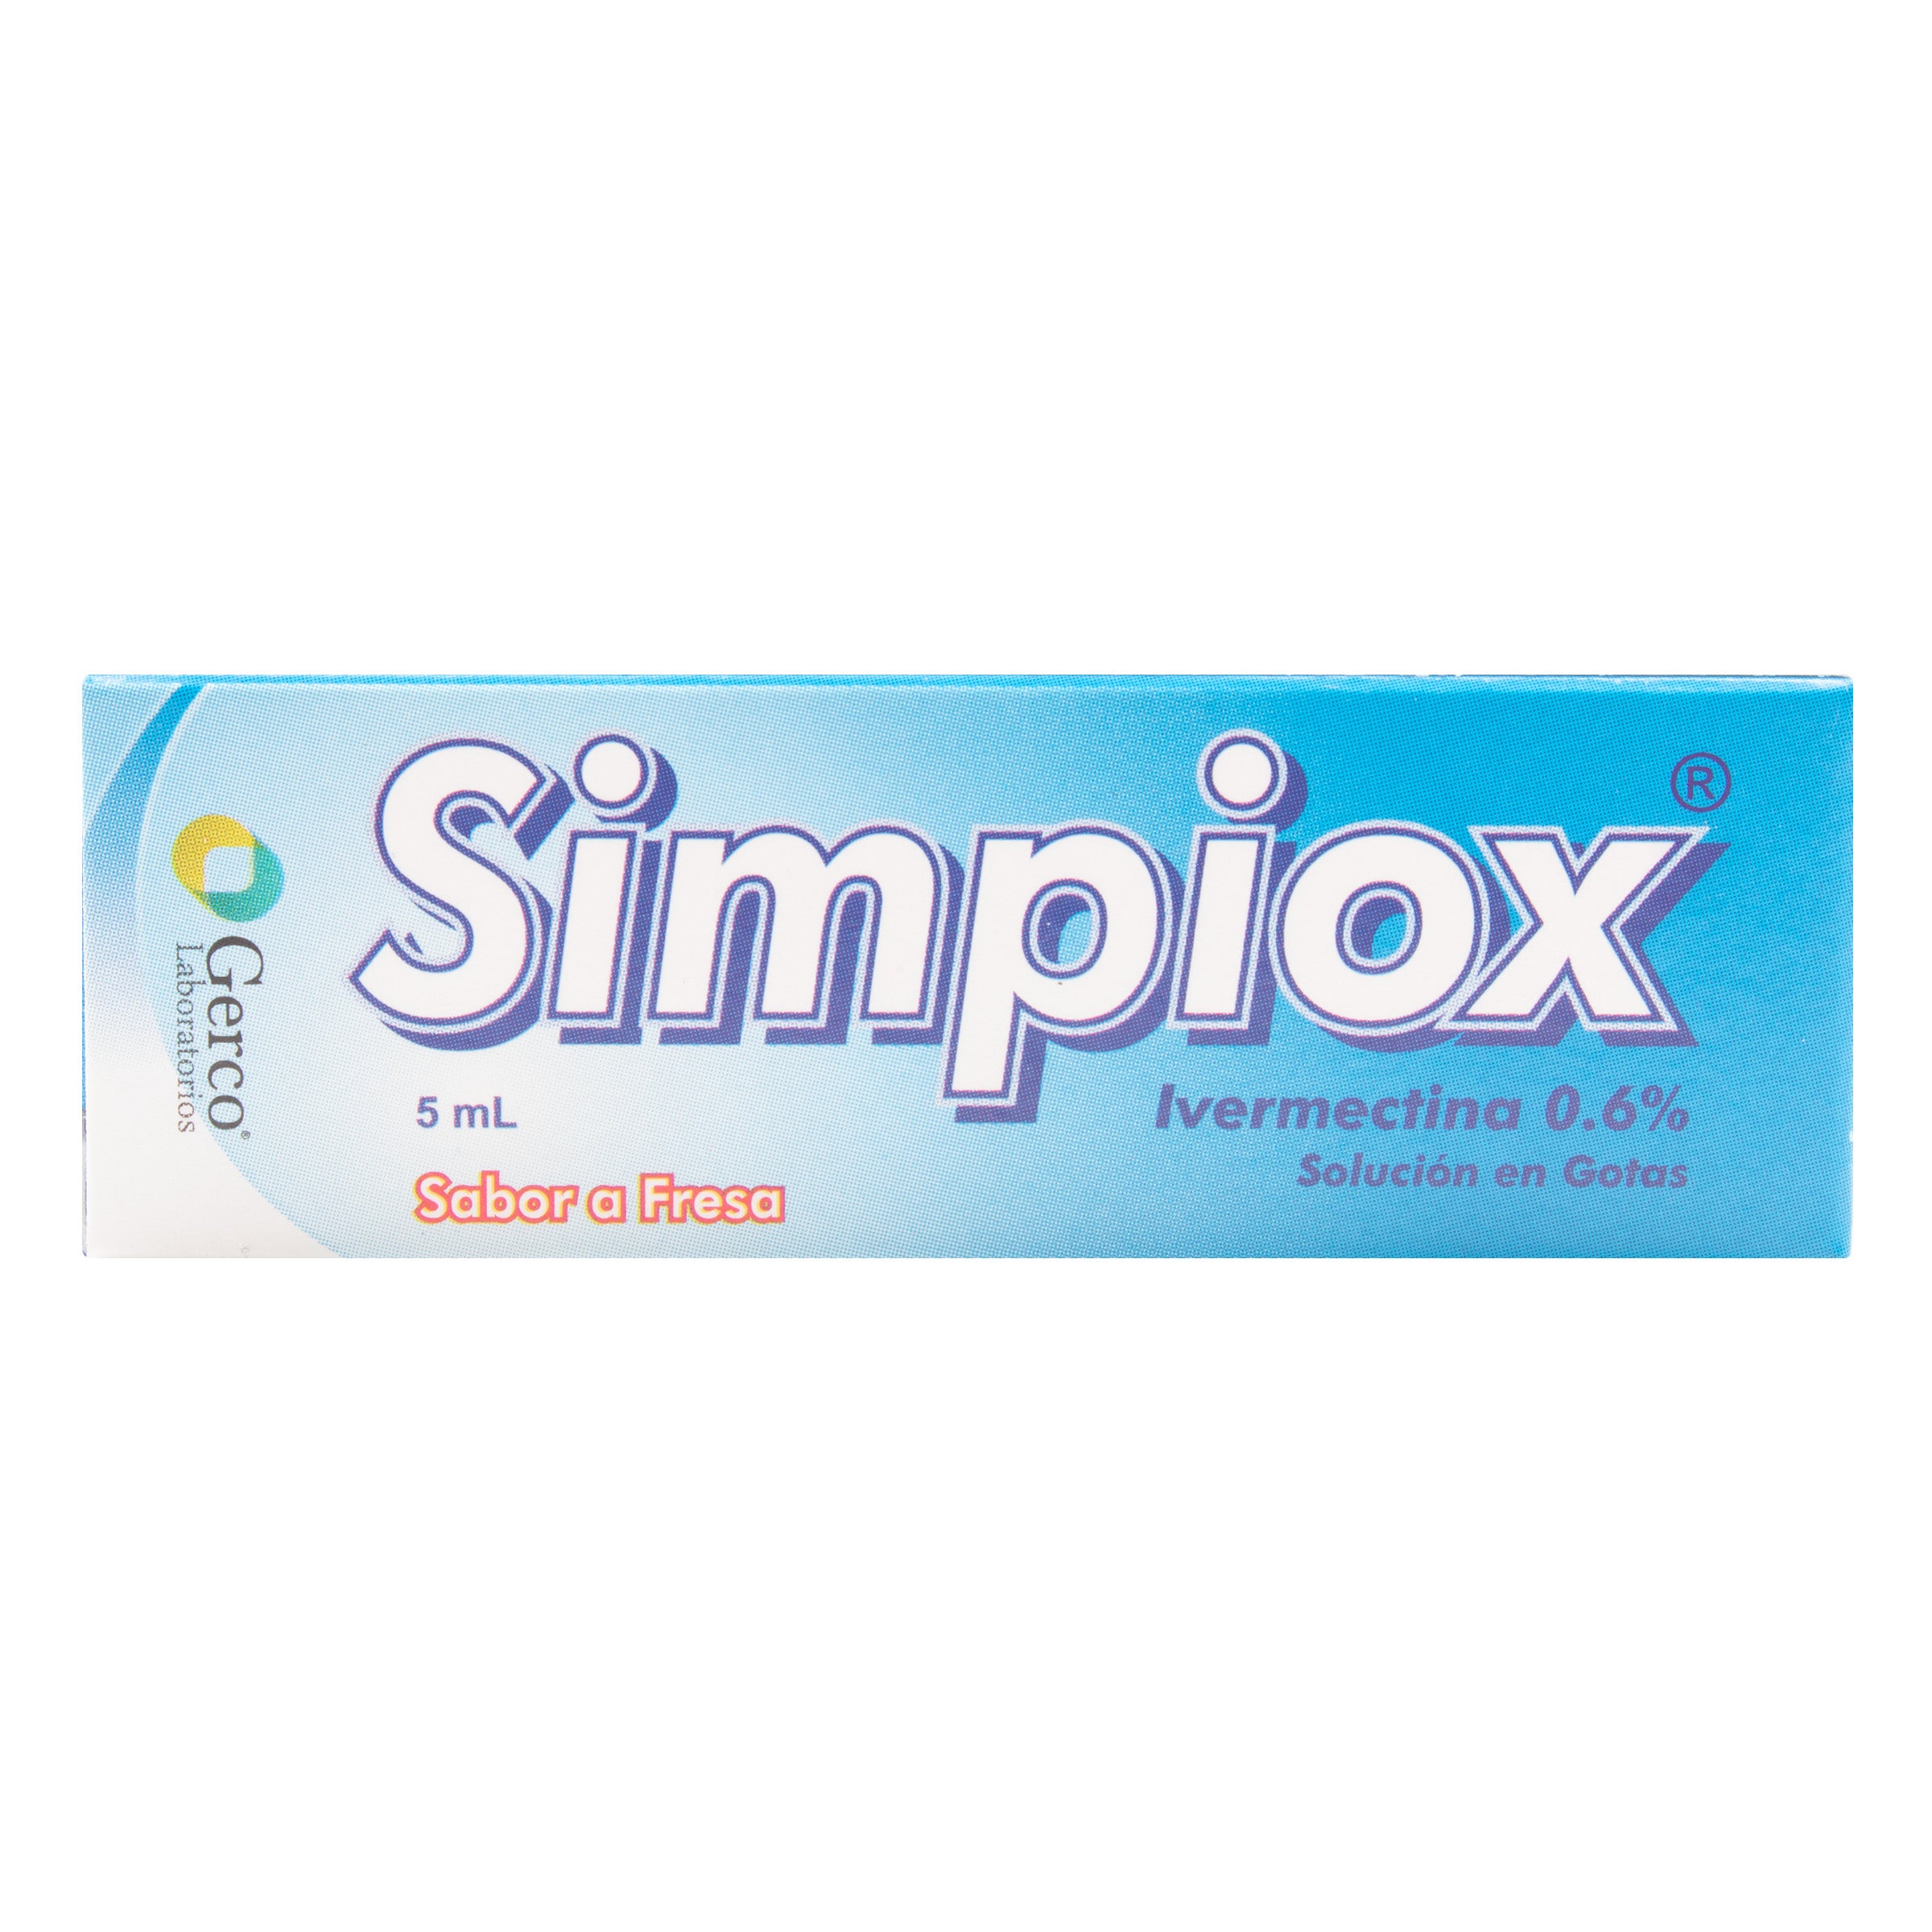 SIMPIOX 0.6% (IVERMECTINA) GOTAS 5 ML